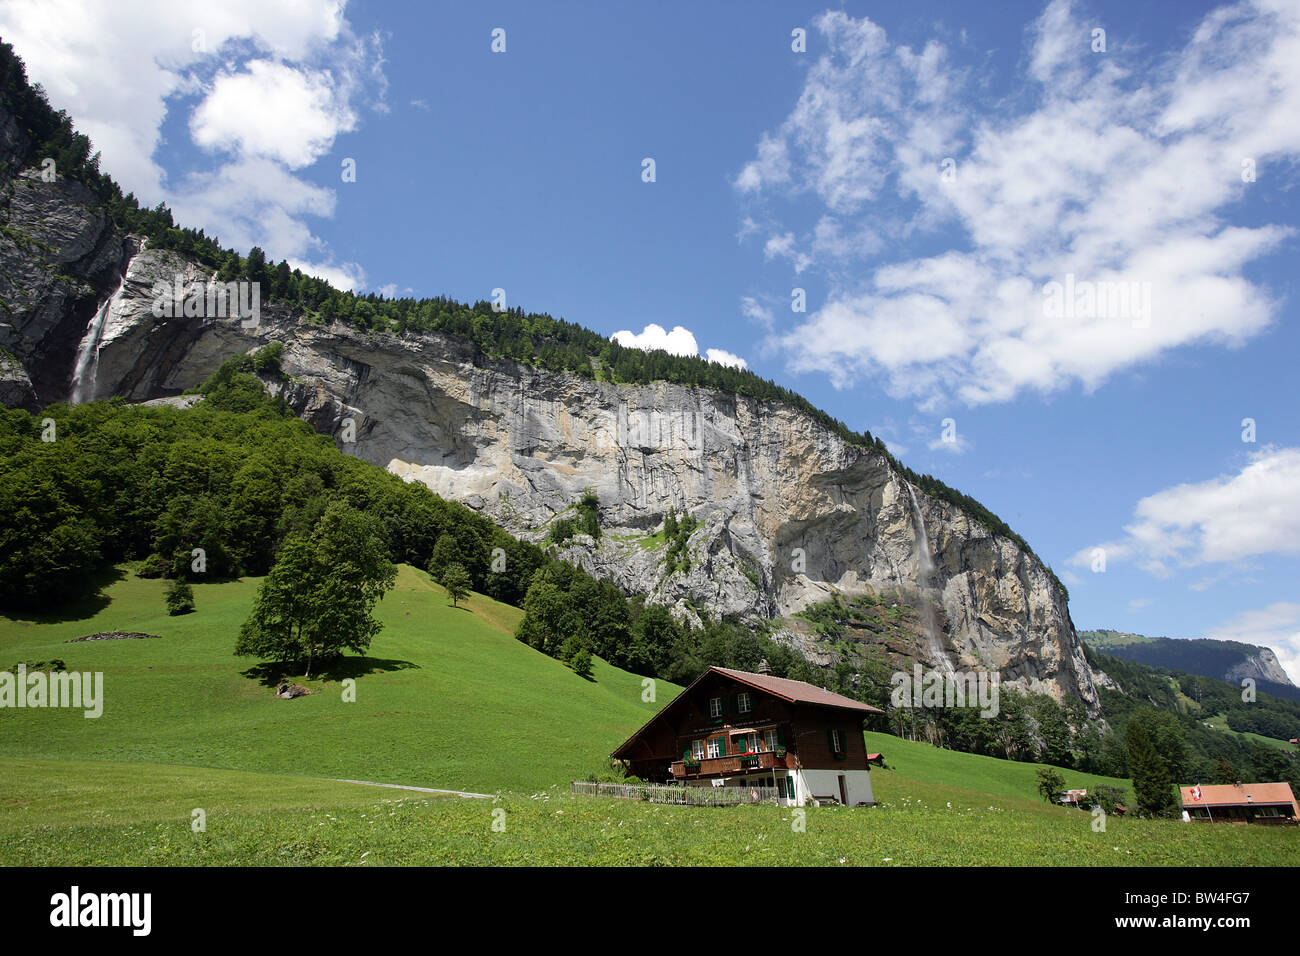 General views around the Lauterbrunnen valley, Switzerland Stock Photo